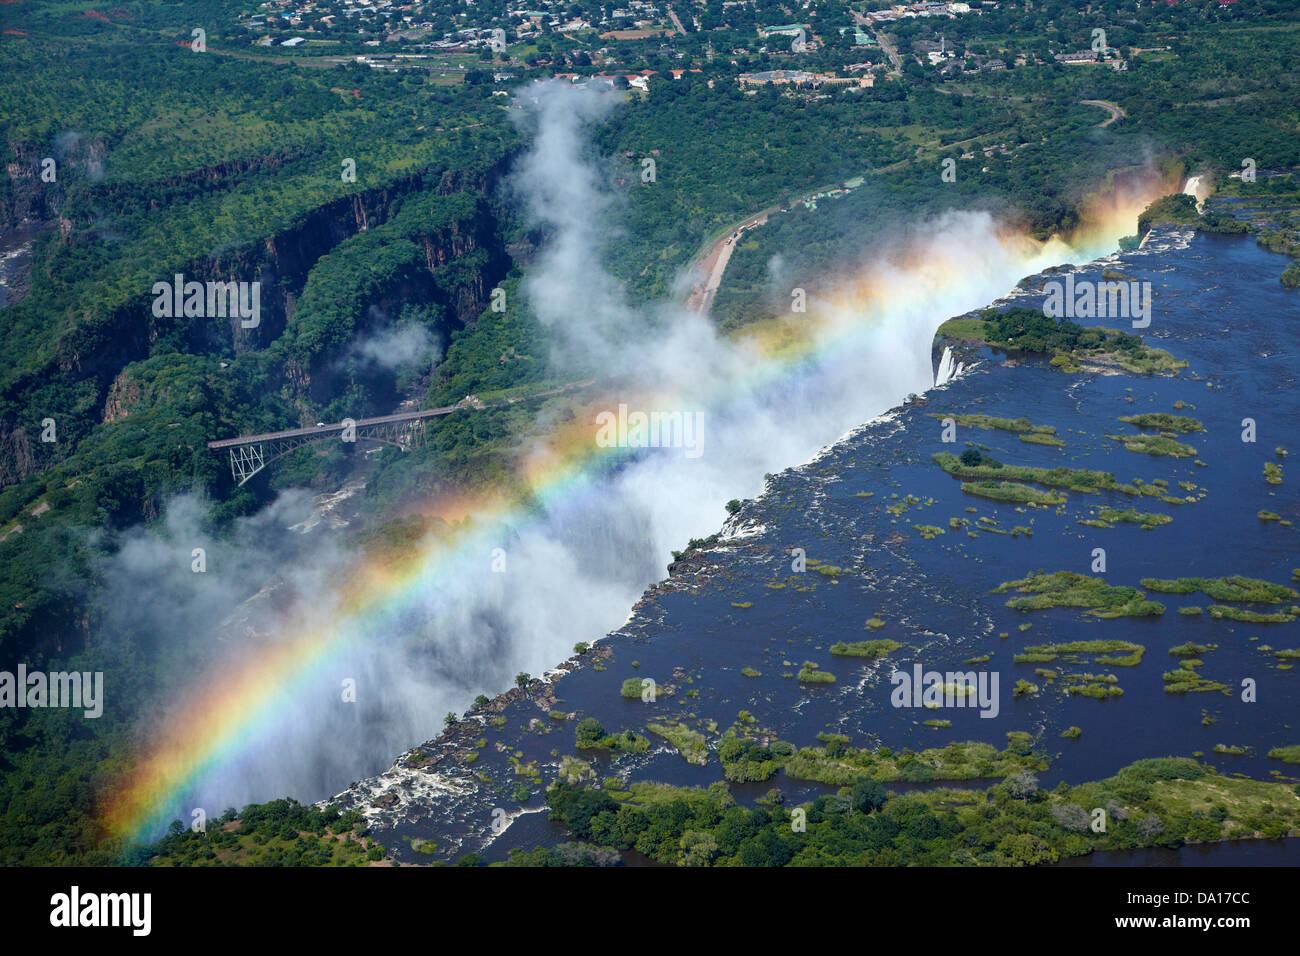 Regenbogen und Spray, Victoriafälle oder "Mosi-Oa-Tunya" (der Rauch, der donnert) und Sambesi, Simbabwe / Sambia Grenze Stockfoto